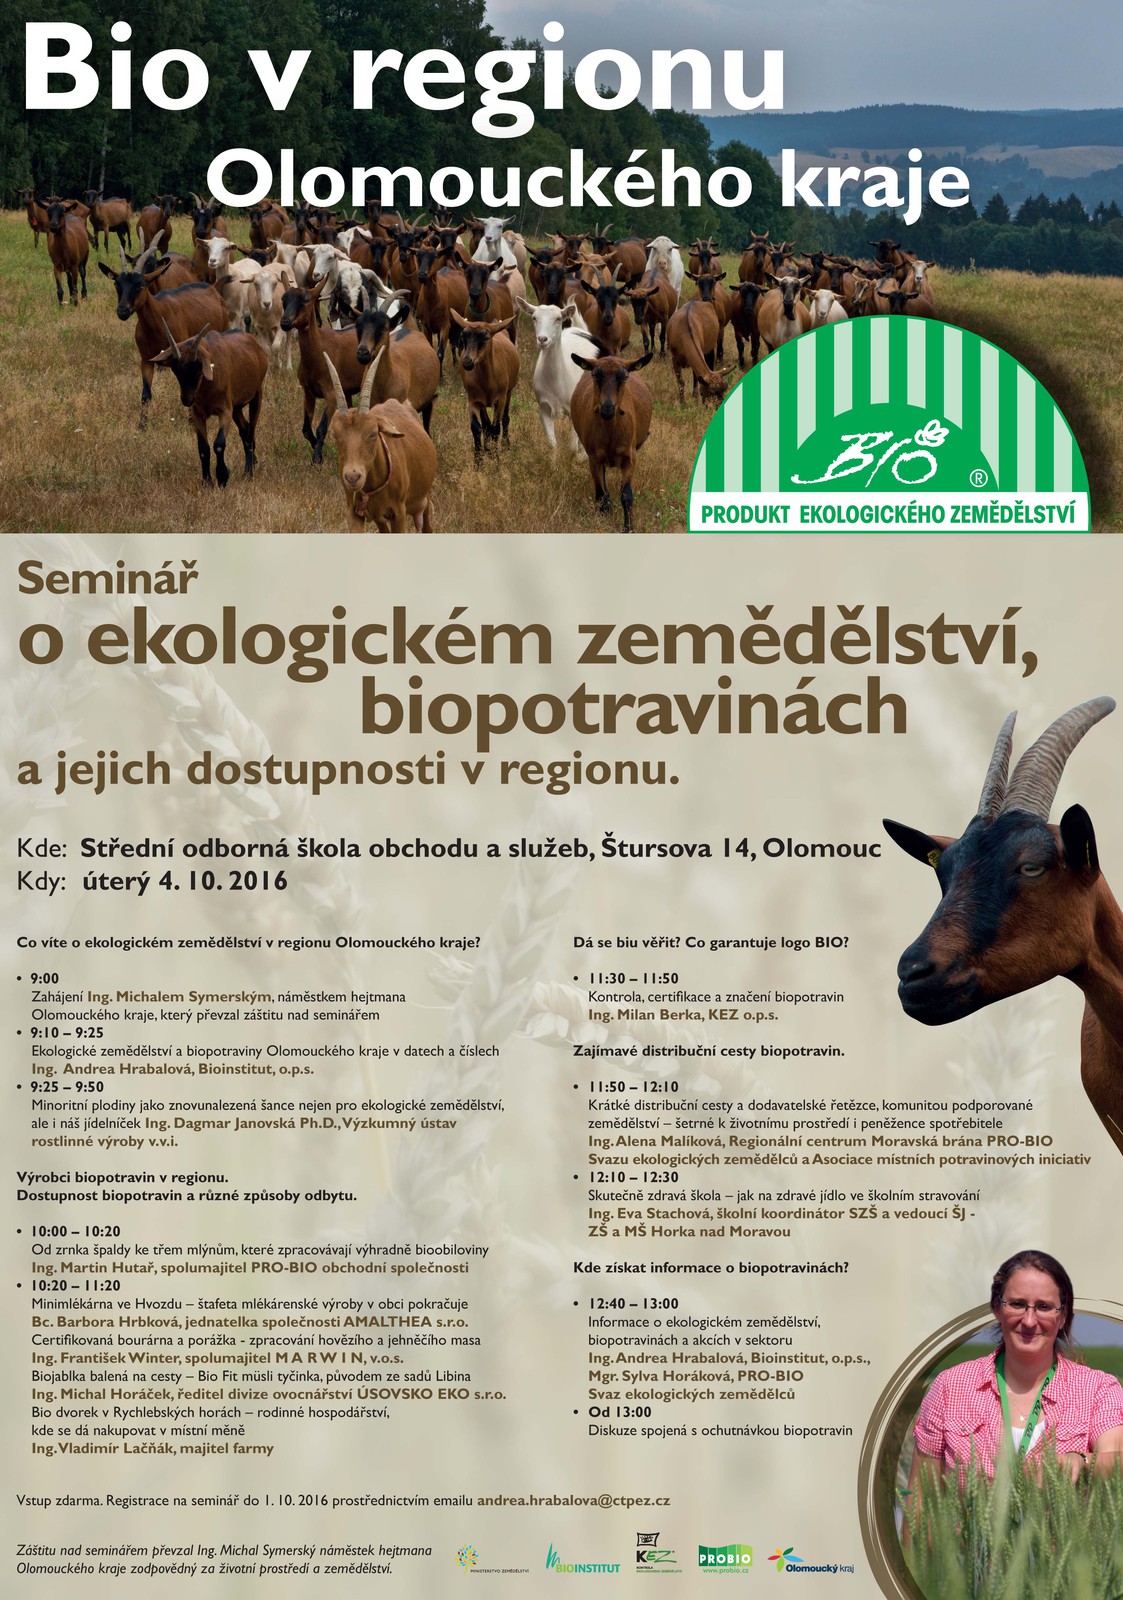 Pozvanka na seminar_Bio v Olomouckem kraji_Olomouc 4.10.2016.jpg